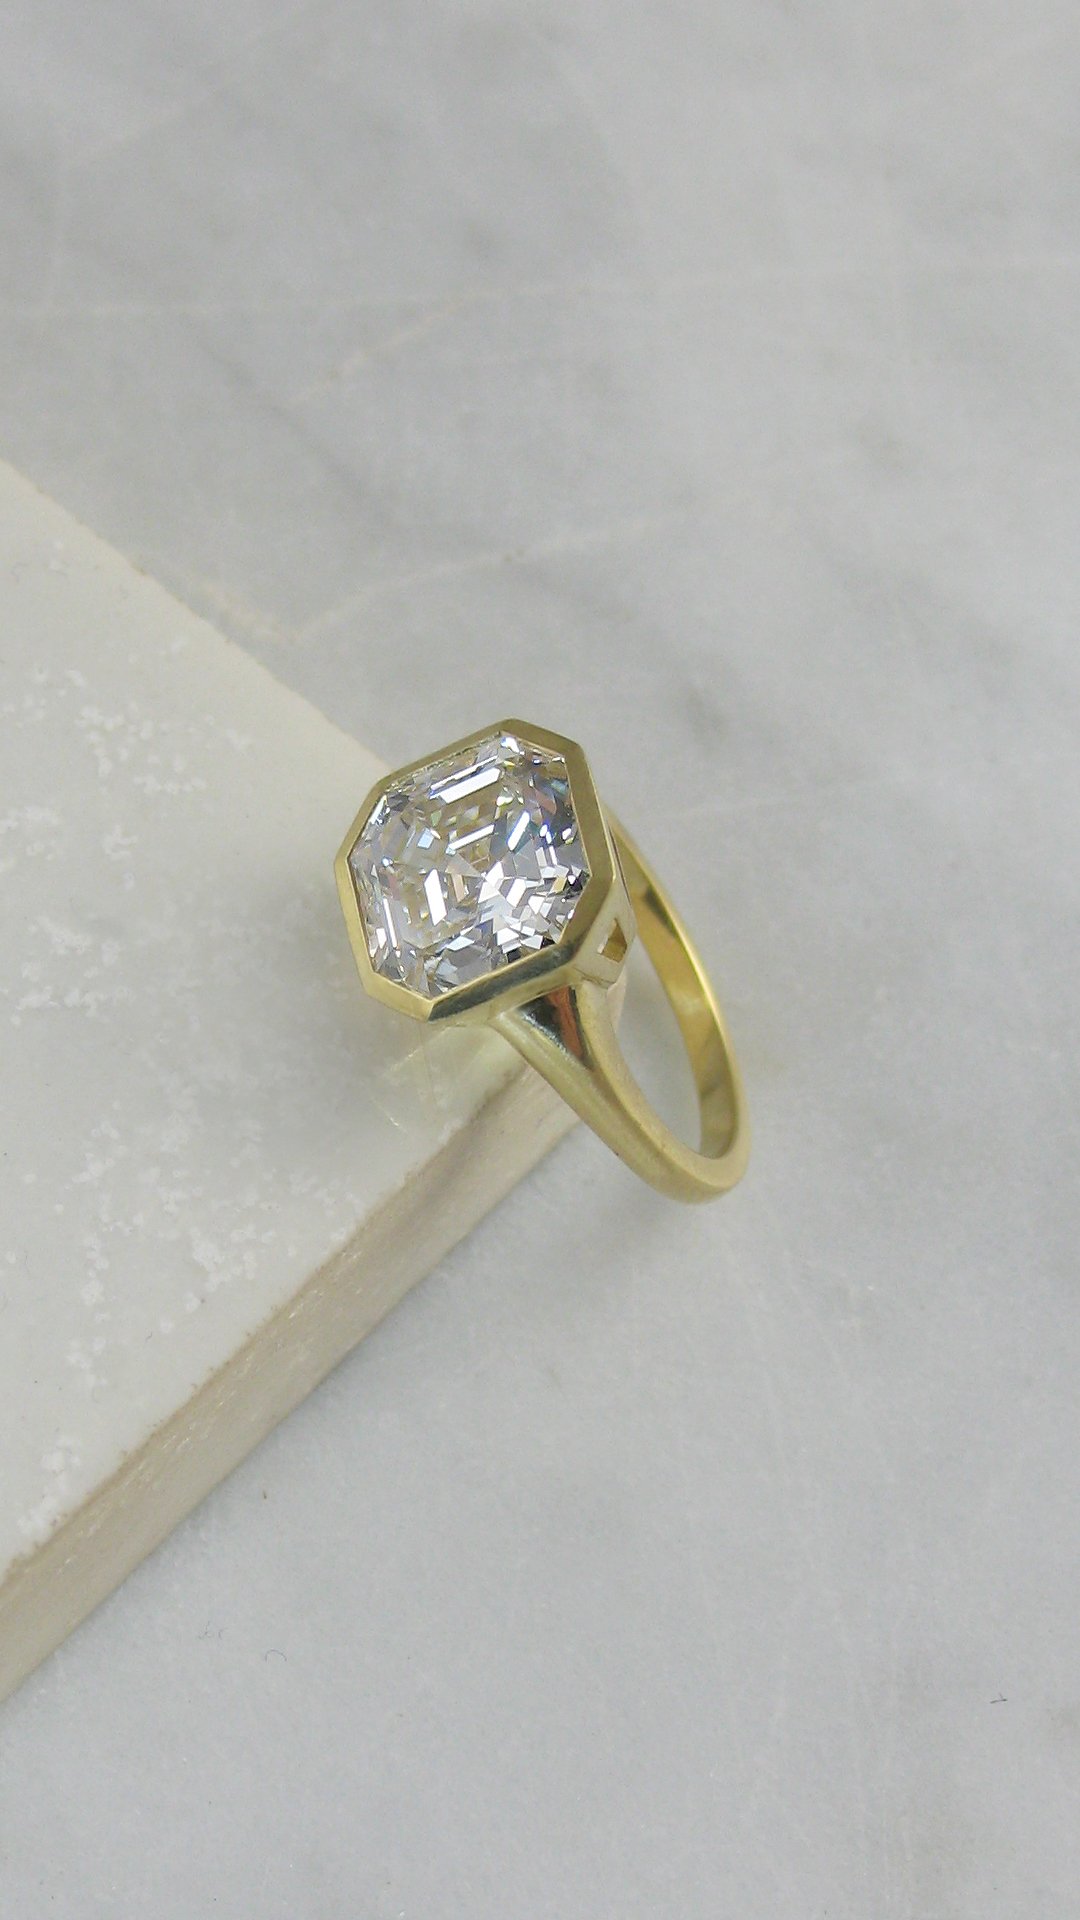 An Art Deco style bezel set Asscher cut diamond engagement ring